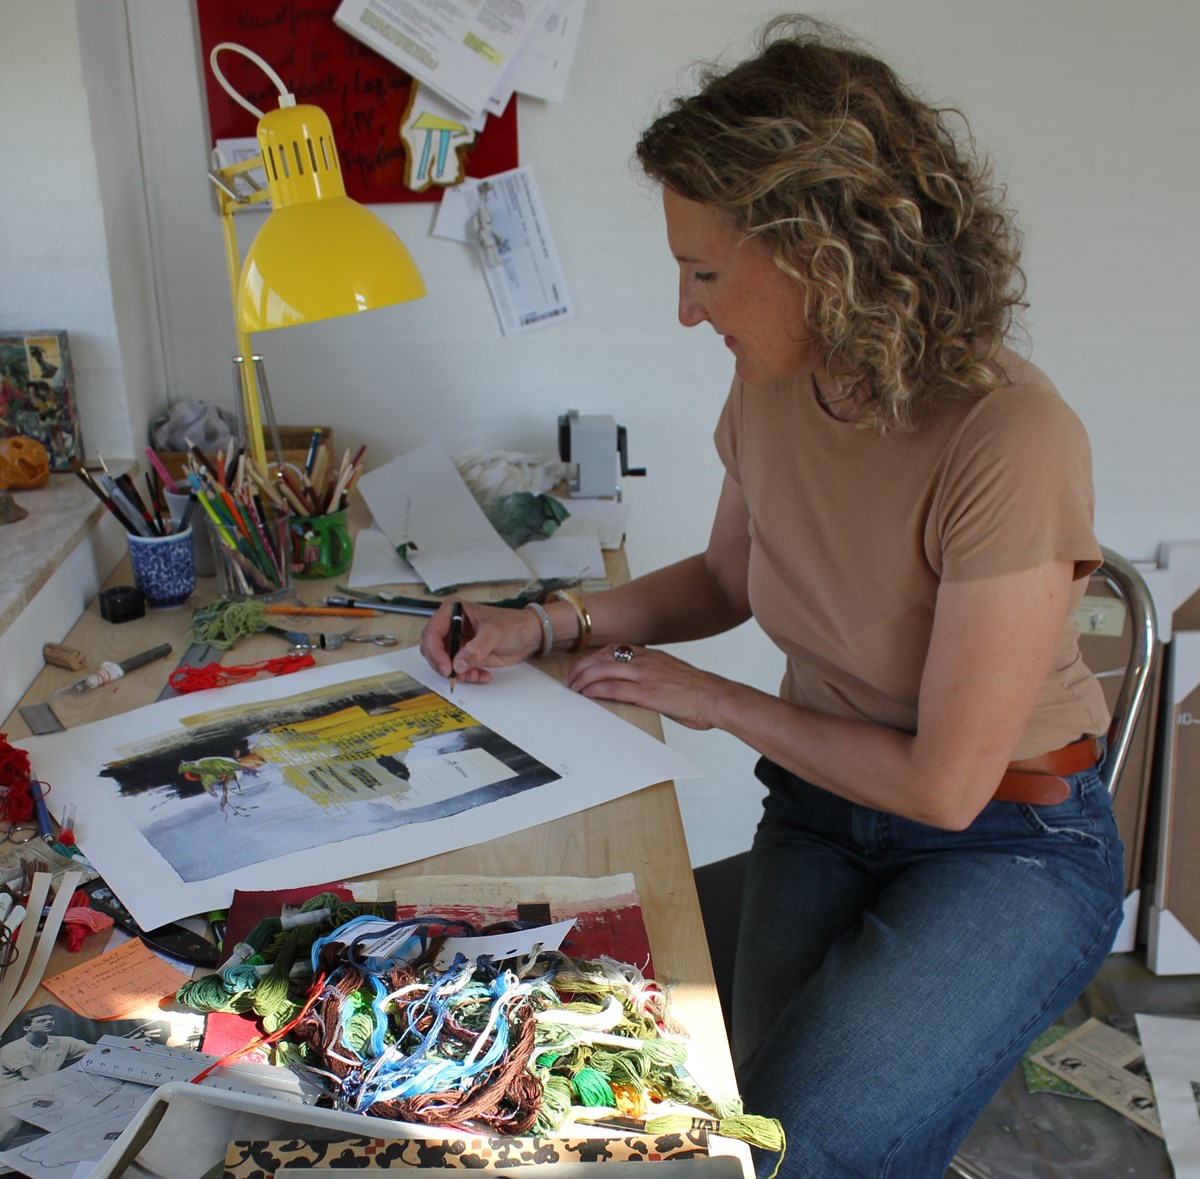 Da Eva Cecilie fik stress, begyndte hun efter mange års pause at være kreativ. I dag sælger hun kunstværkerne, og hun arbejder kun deltid ved siden af sin hobby.